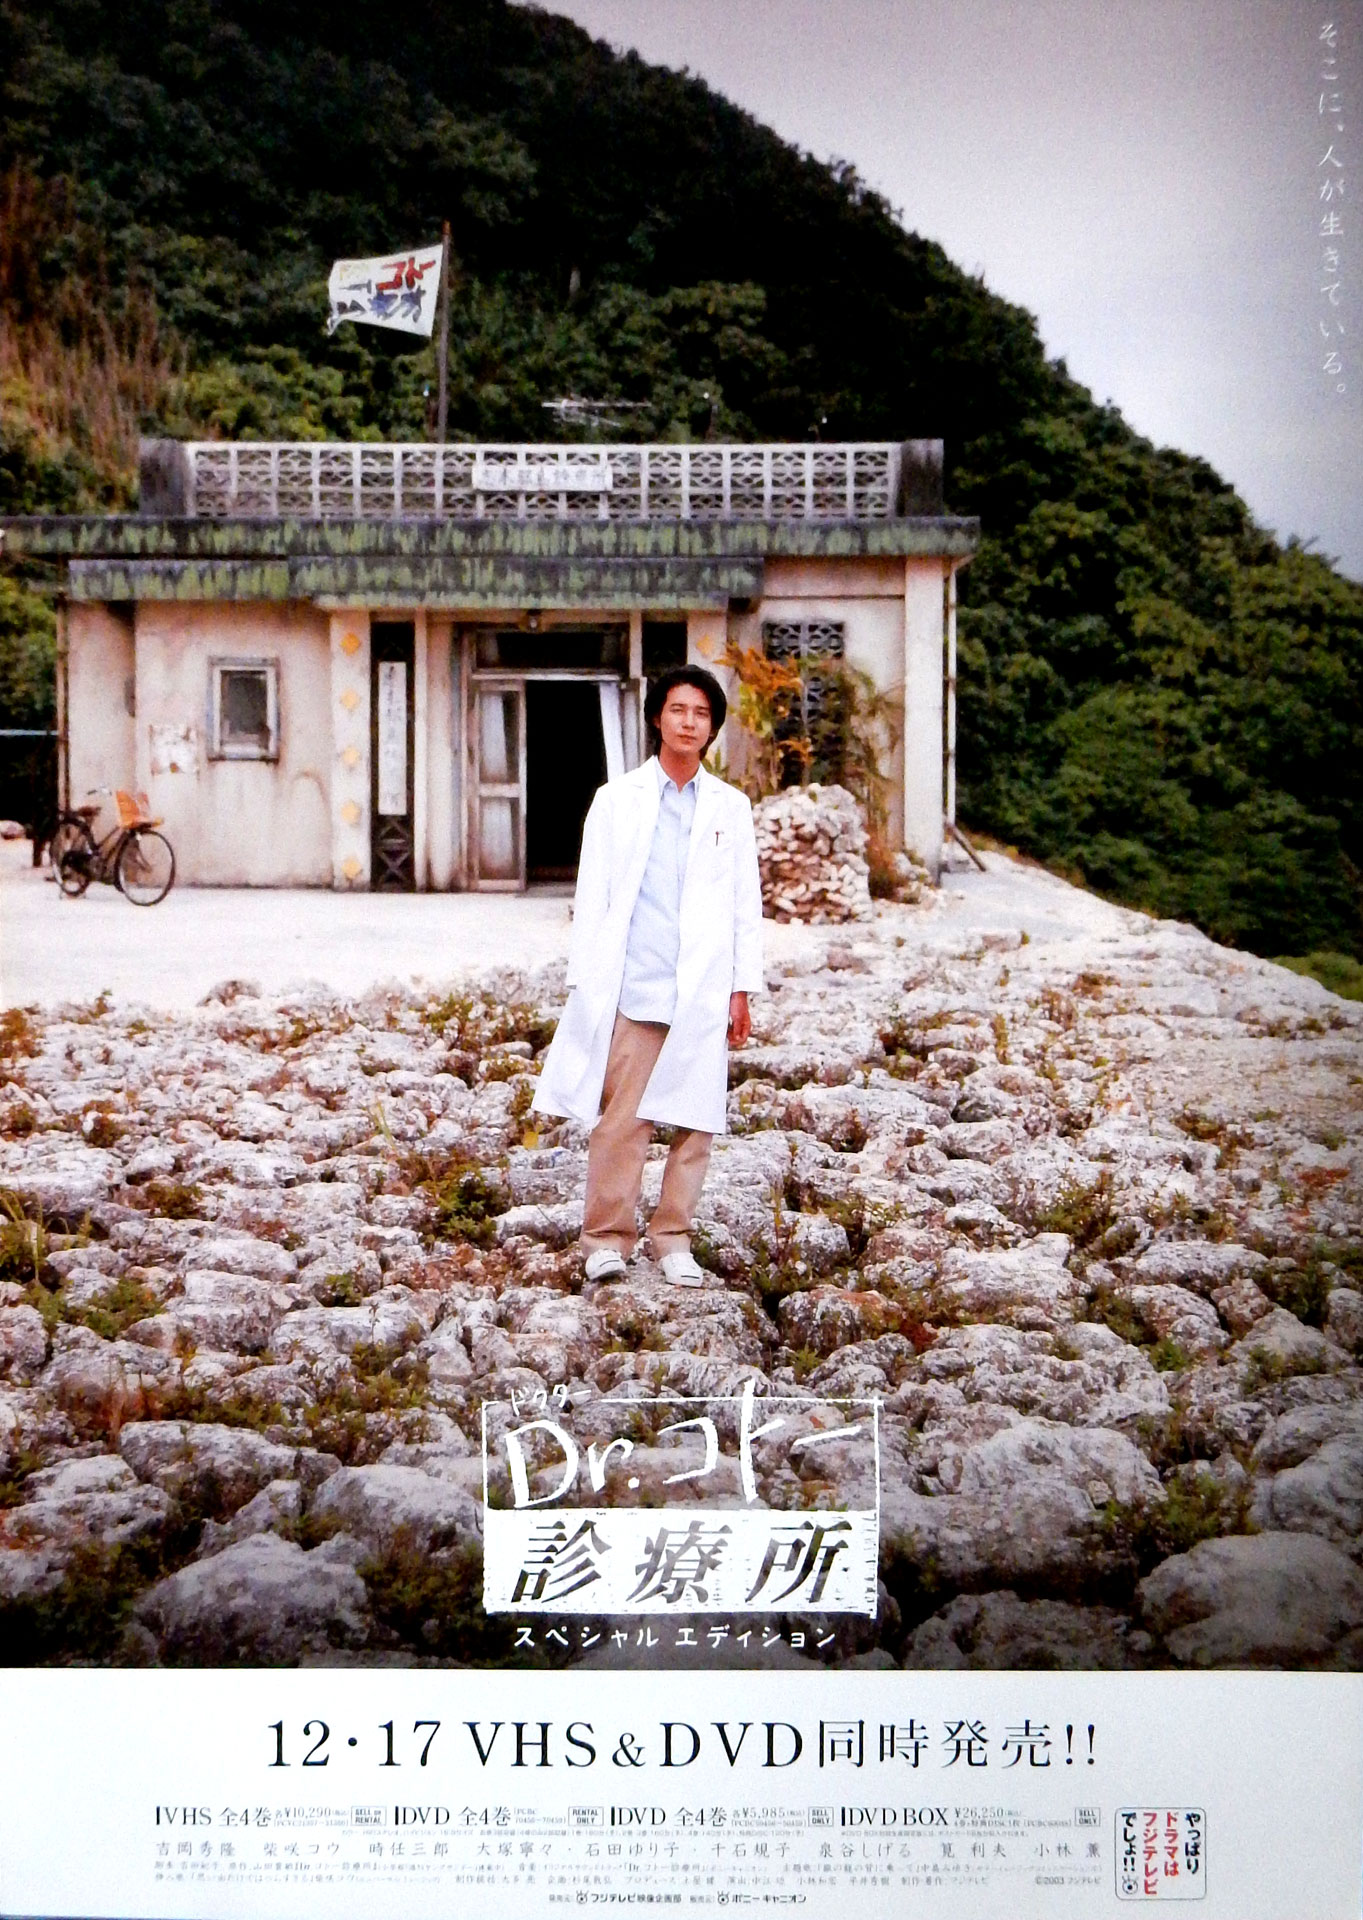 Dr.コトー診療所 (吉岡秀隆)のポスター